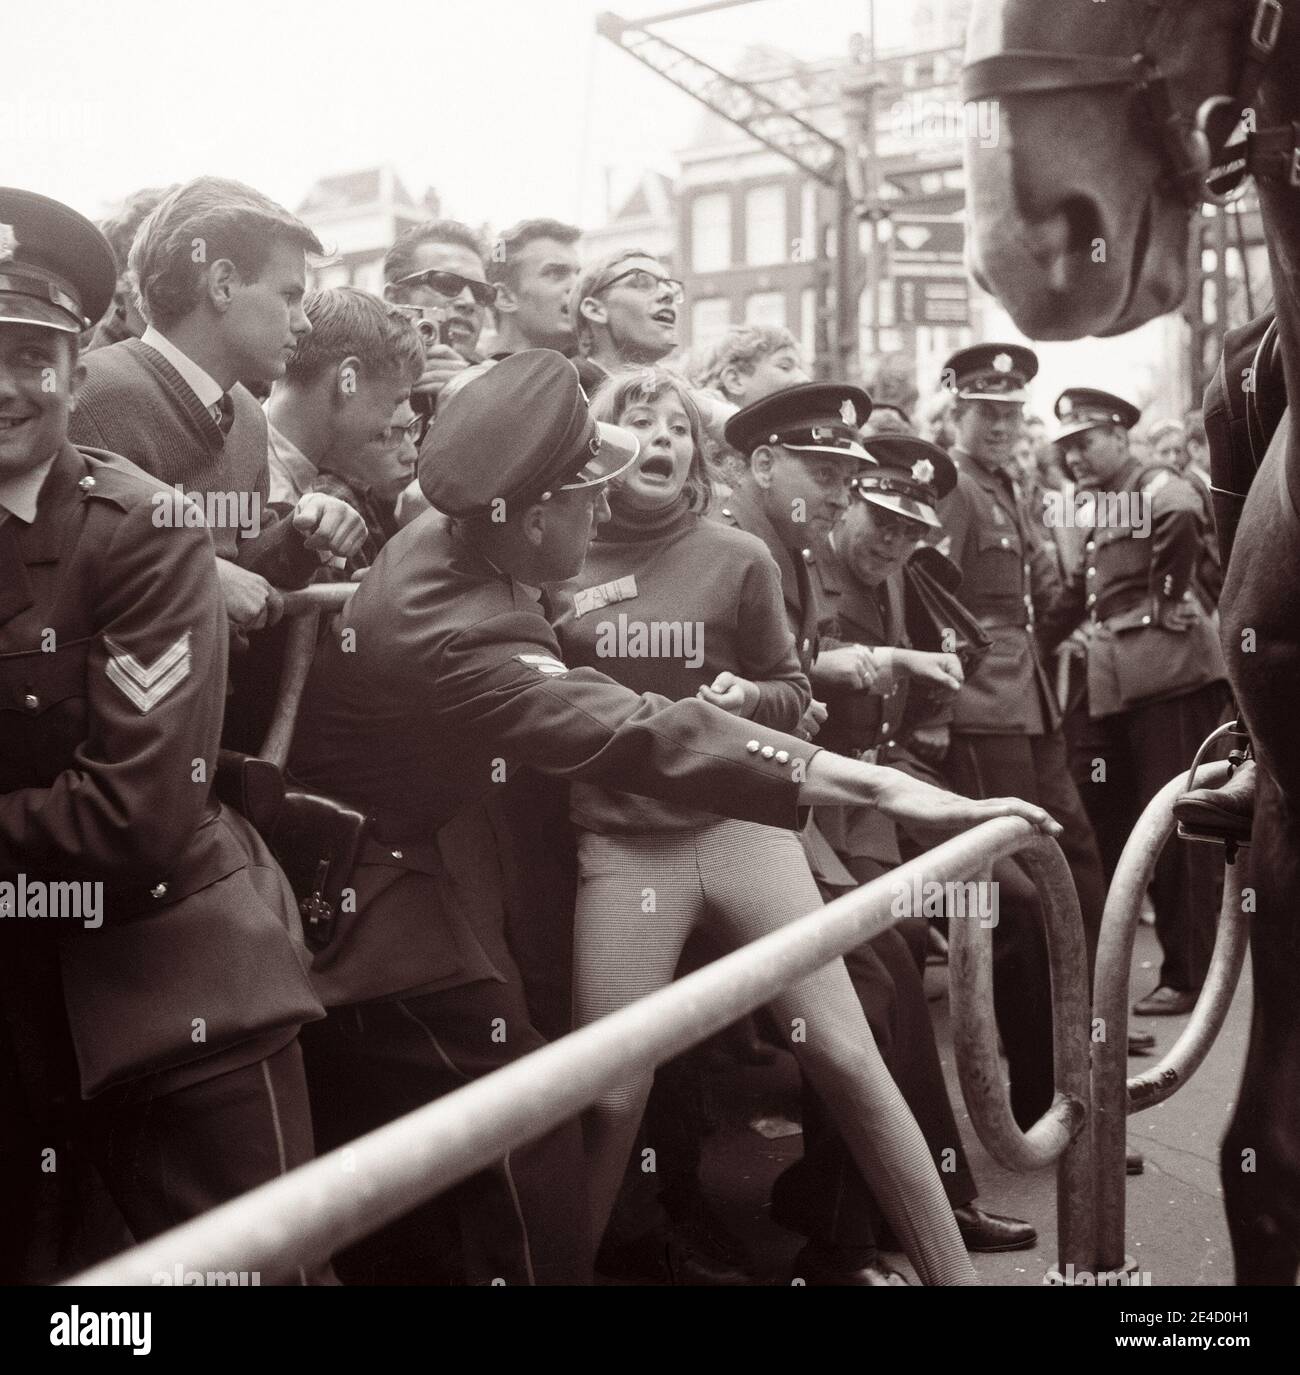 La polizia ha lottato per tenere indietro la folla dei fan dei Beatles quando la rock band inglese è arrivata ad Amsterdam, nell'Olanda del Nord, il 5 giugno 1964. Foto Stock